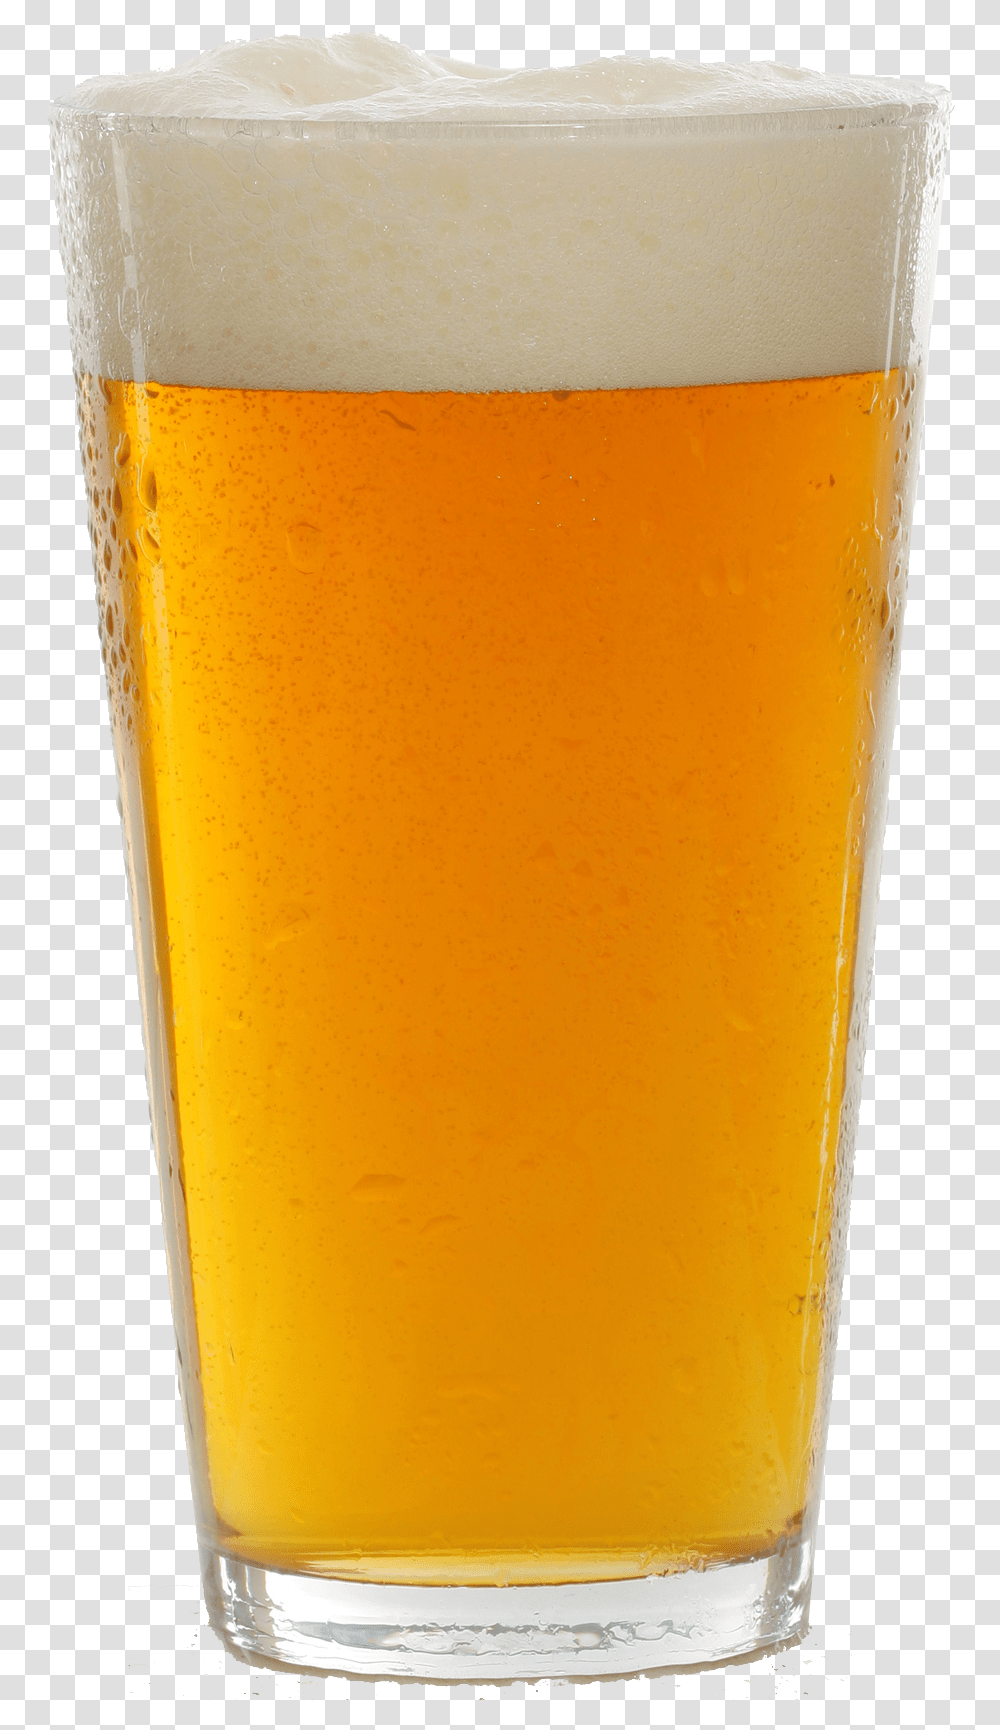 Beer Image Beer Pint Glass, Beer Glass, Alcohol, Beverage, Drink Transparent Png